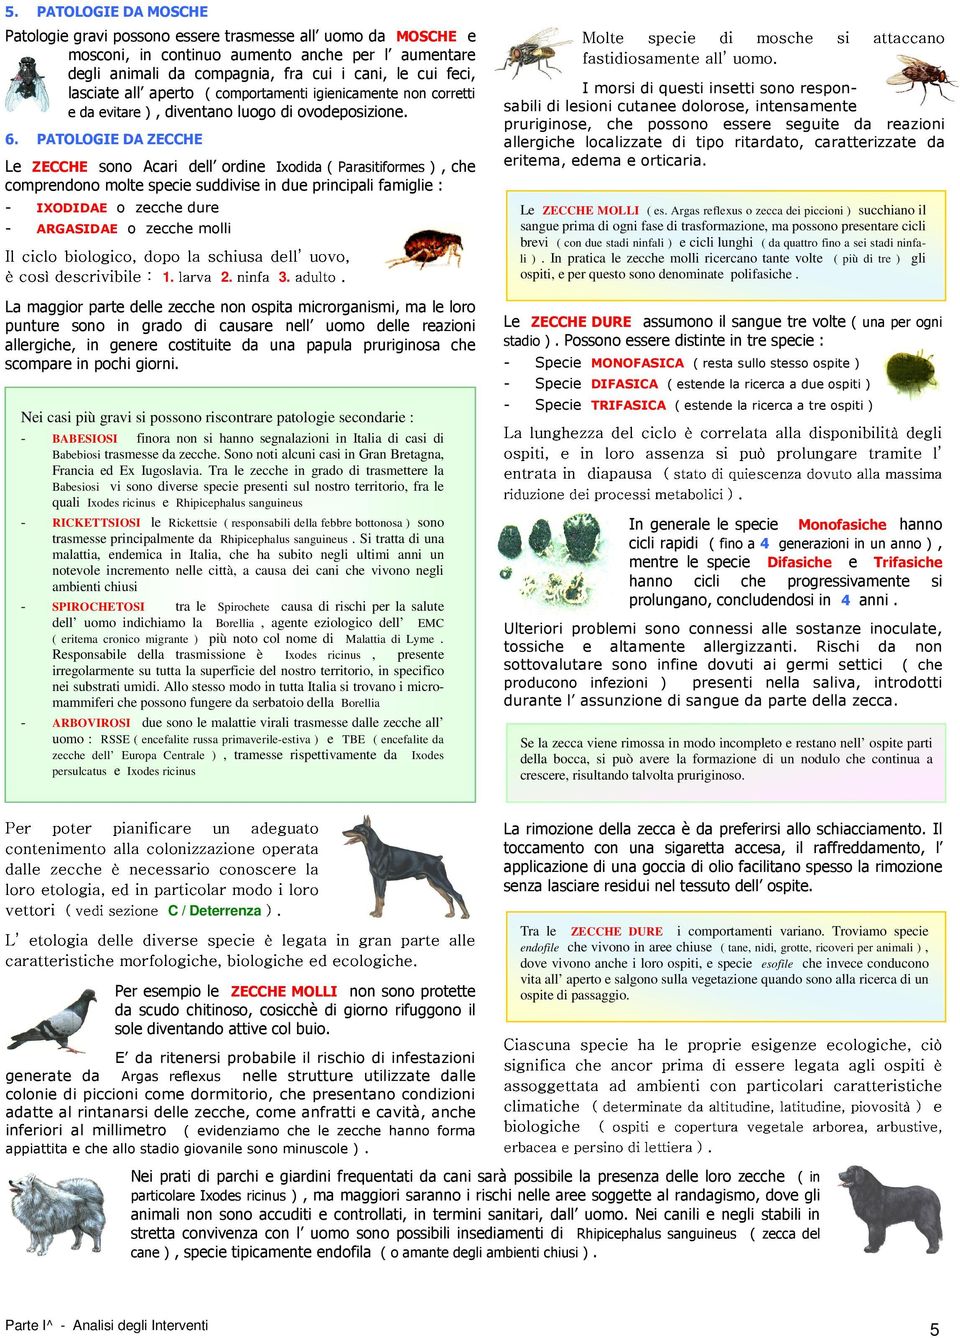 6. PATOLOGIE DA ZECCHE Le ZECCHE sono Acari dell ordine Ixodida ( Parasitiformes ), che comprendono molte specie suddivise in due principali famiglie : - IXODIDAE o zecche dure - ARGASIDAE o zecche